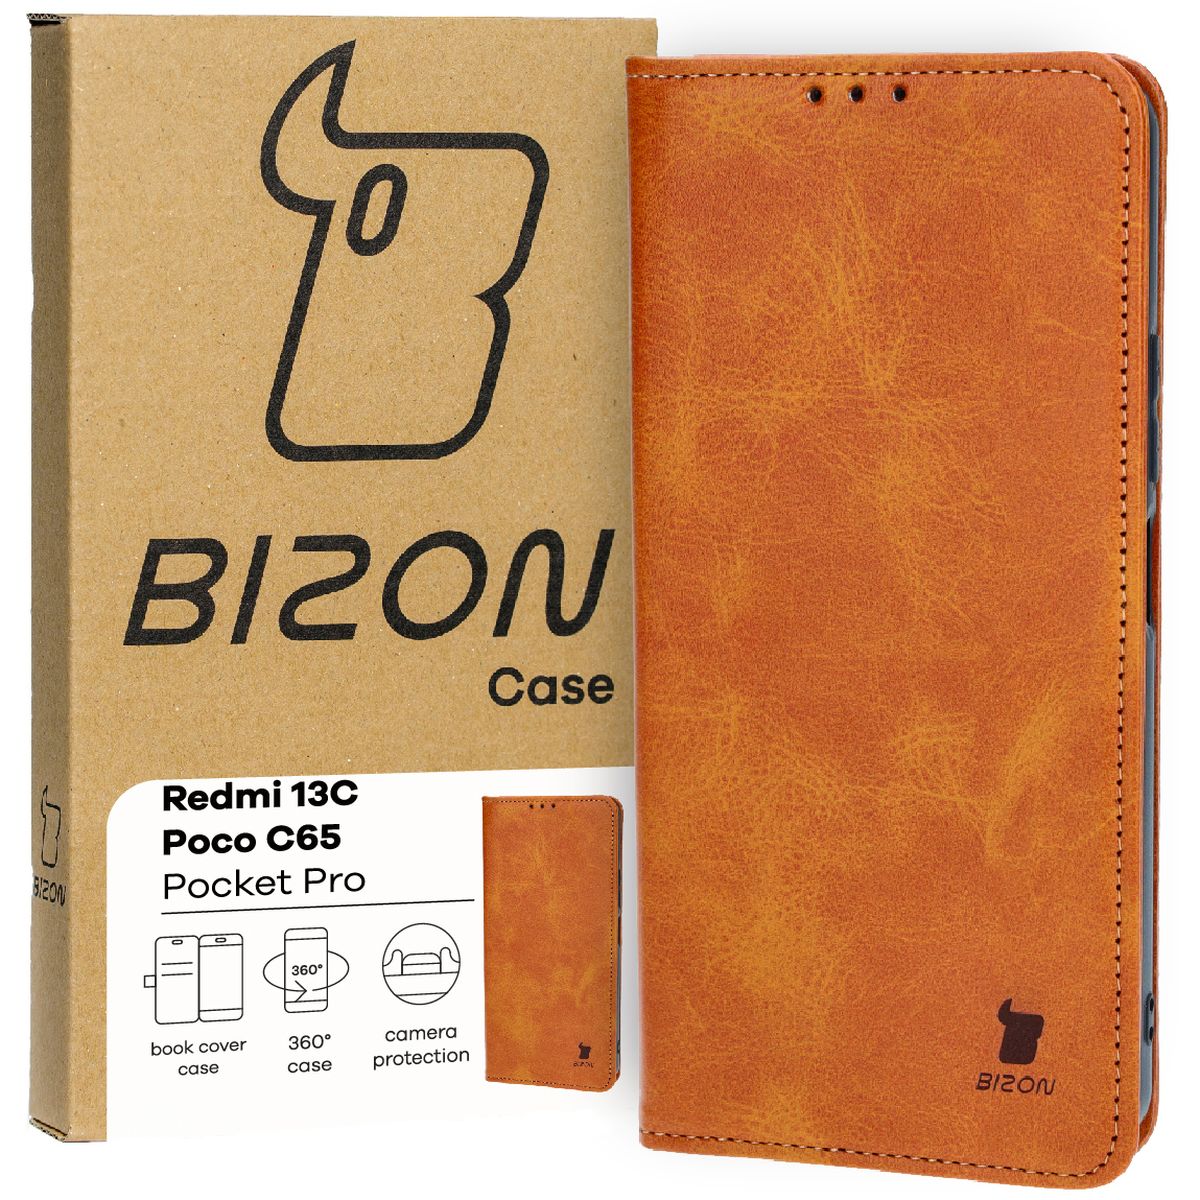 Schutzhülle für Redmi 13C / Poco C65, Bizon Case Pocket Pro, Braun